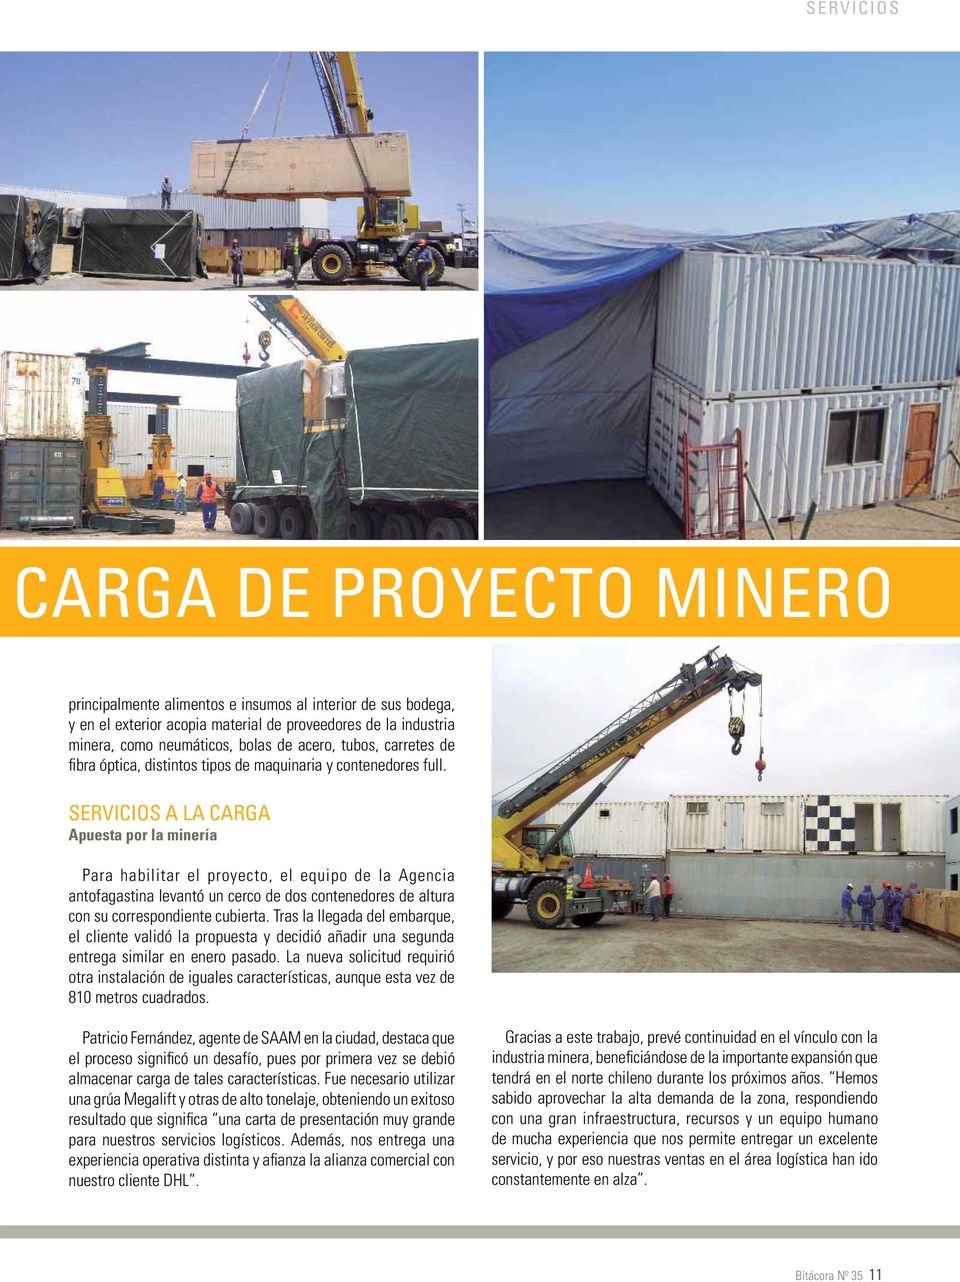 SERVICIOS A LA CARGA Apuesta por la minería Para habilitar el proyecto, el equipo de la Agencia antofagastina levantó un cerco de dos contenedores de altura con su correspondiente cubierta.